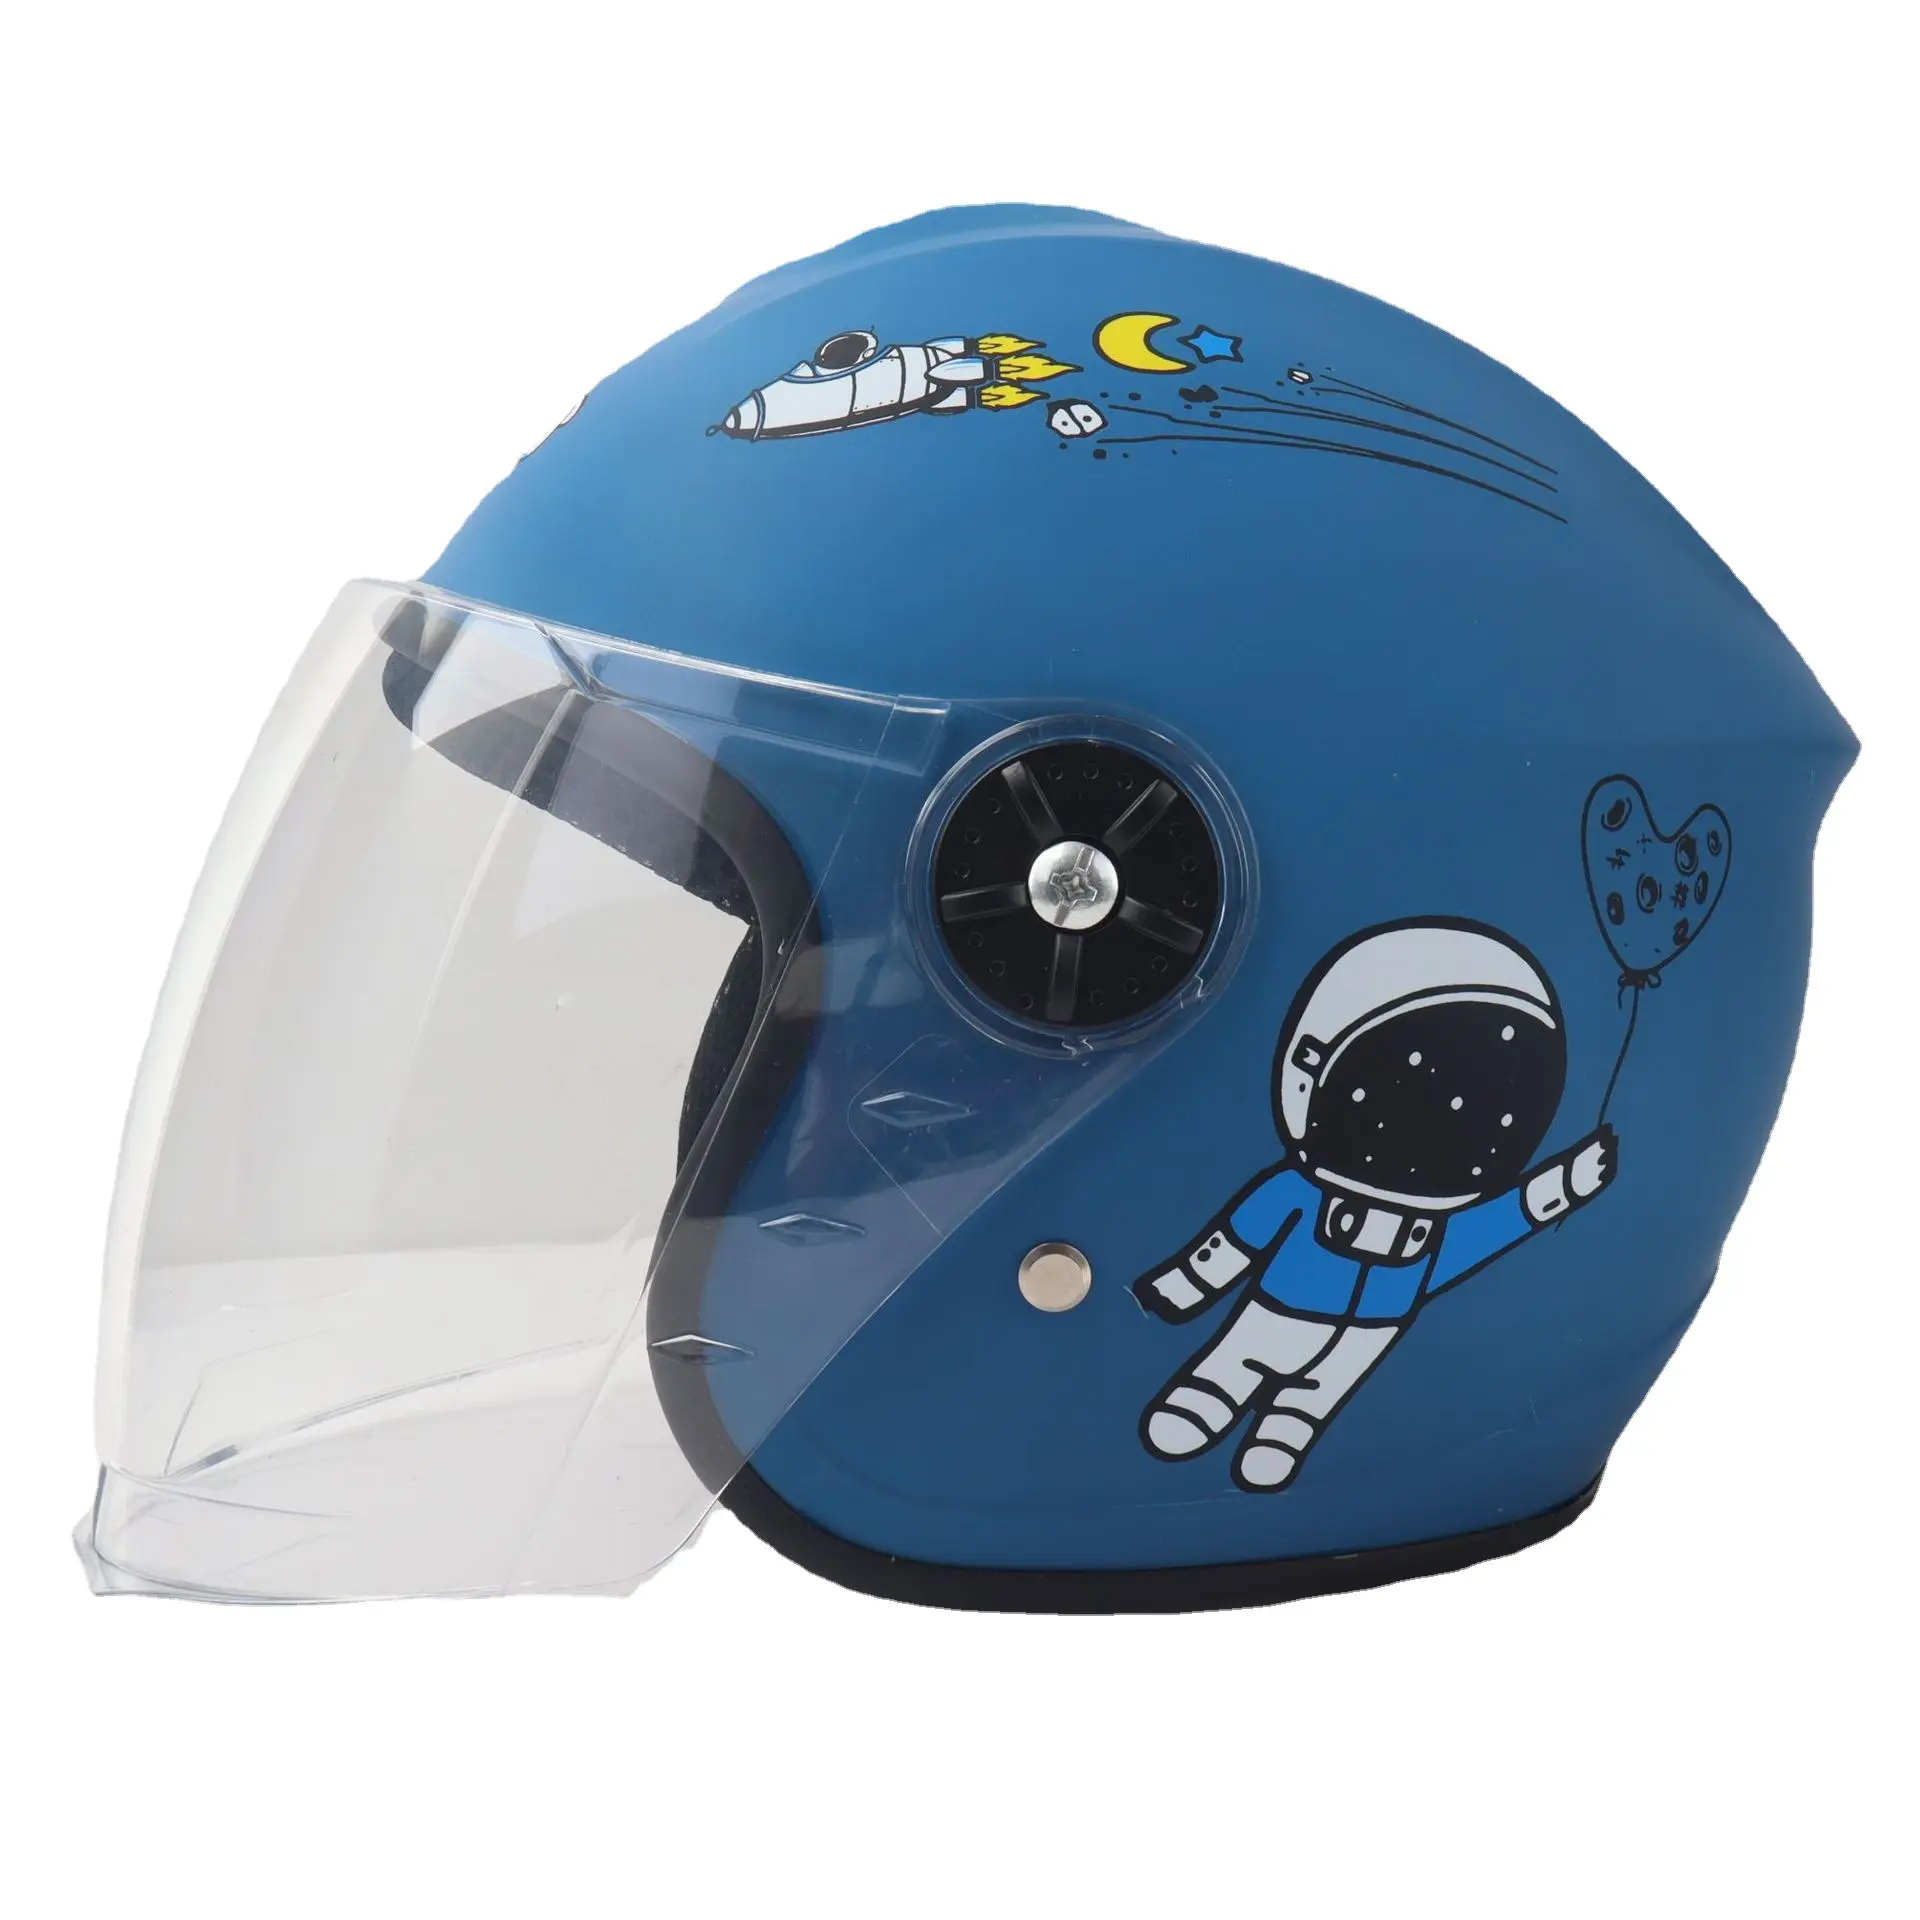 Nouveau casque de moto réglable en ABS pour enfants